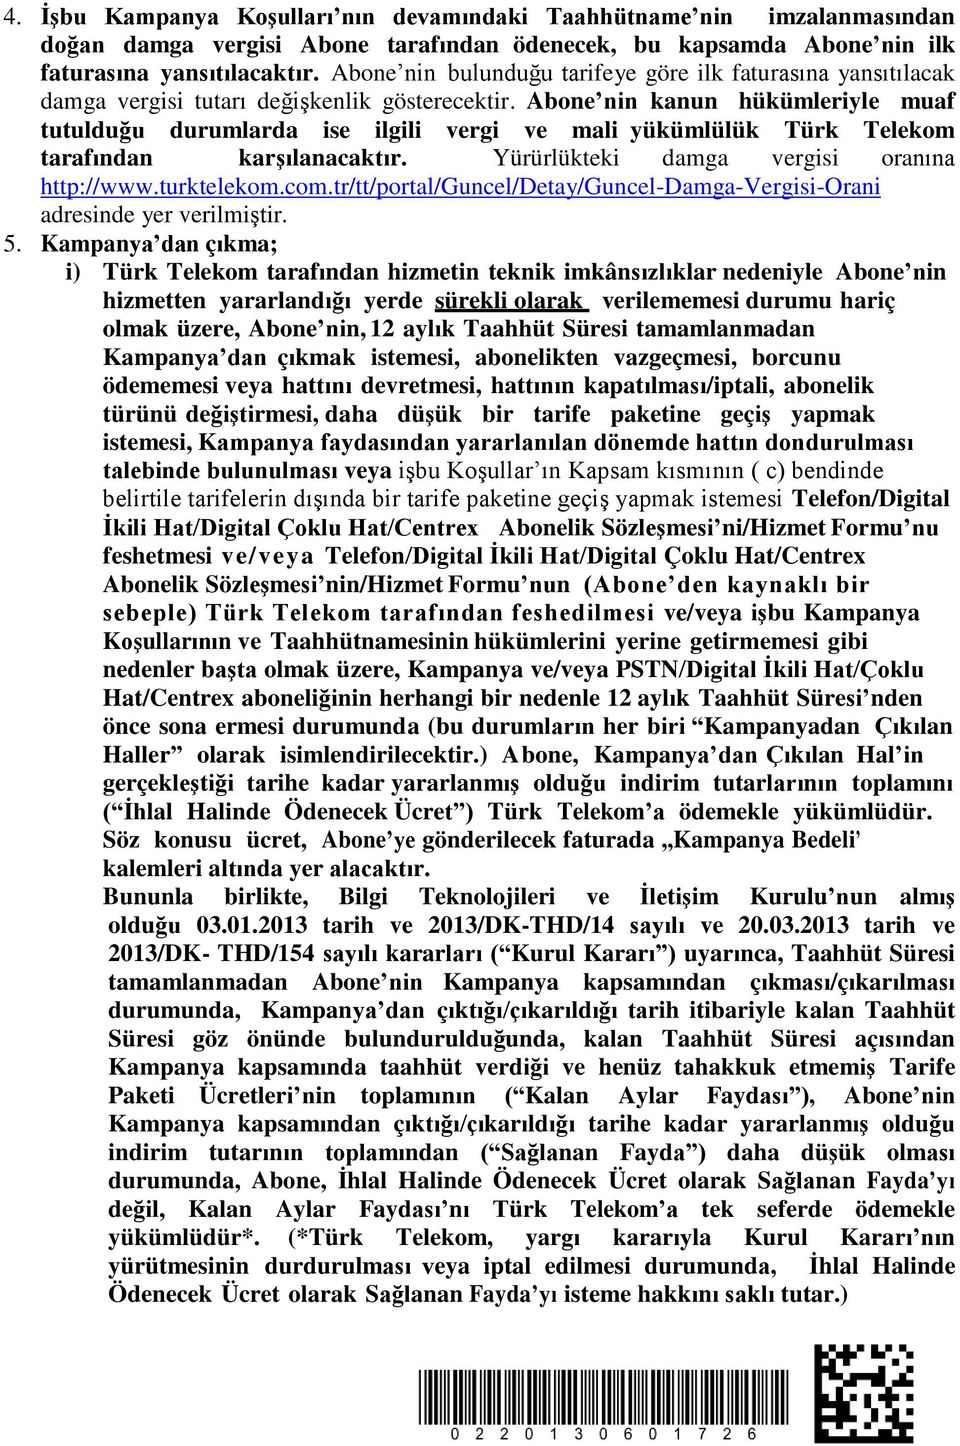 Abone nin kanun hükümleriyle muaf tutulduğu durumlarda ise ilgili vergi ve mali yükümlülük Türk Telekom tarafından karşılanacaktır. Yürürlükteki damga vergisi oranına http://www.turktelekom.com.